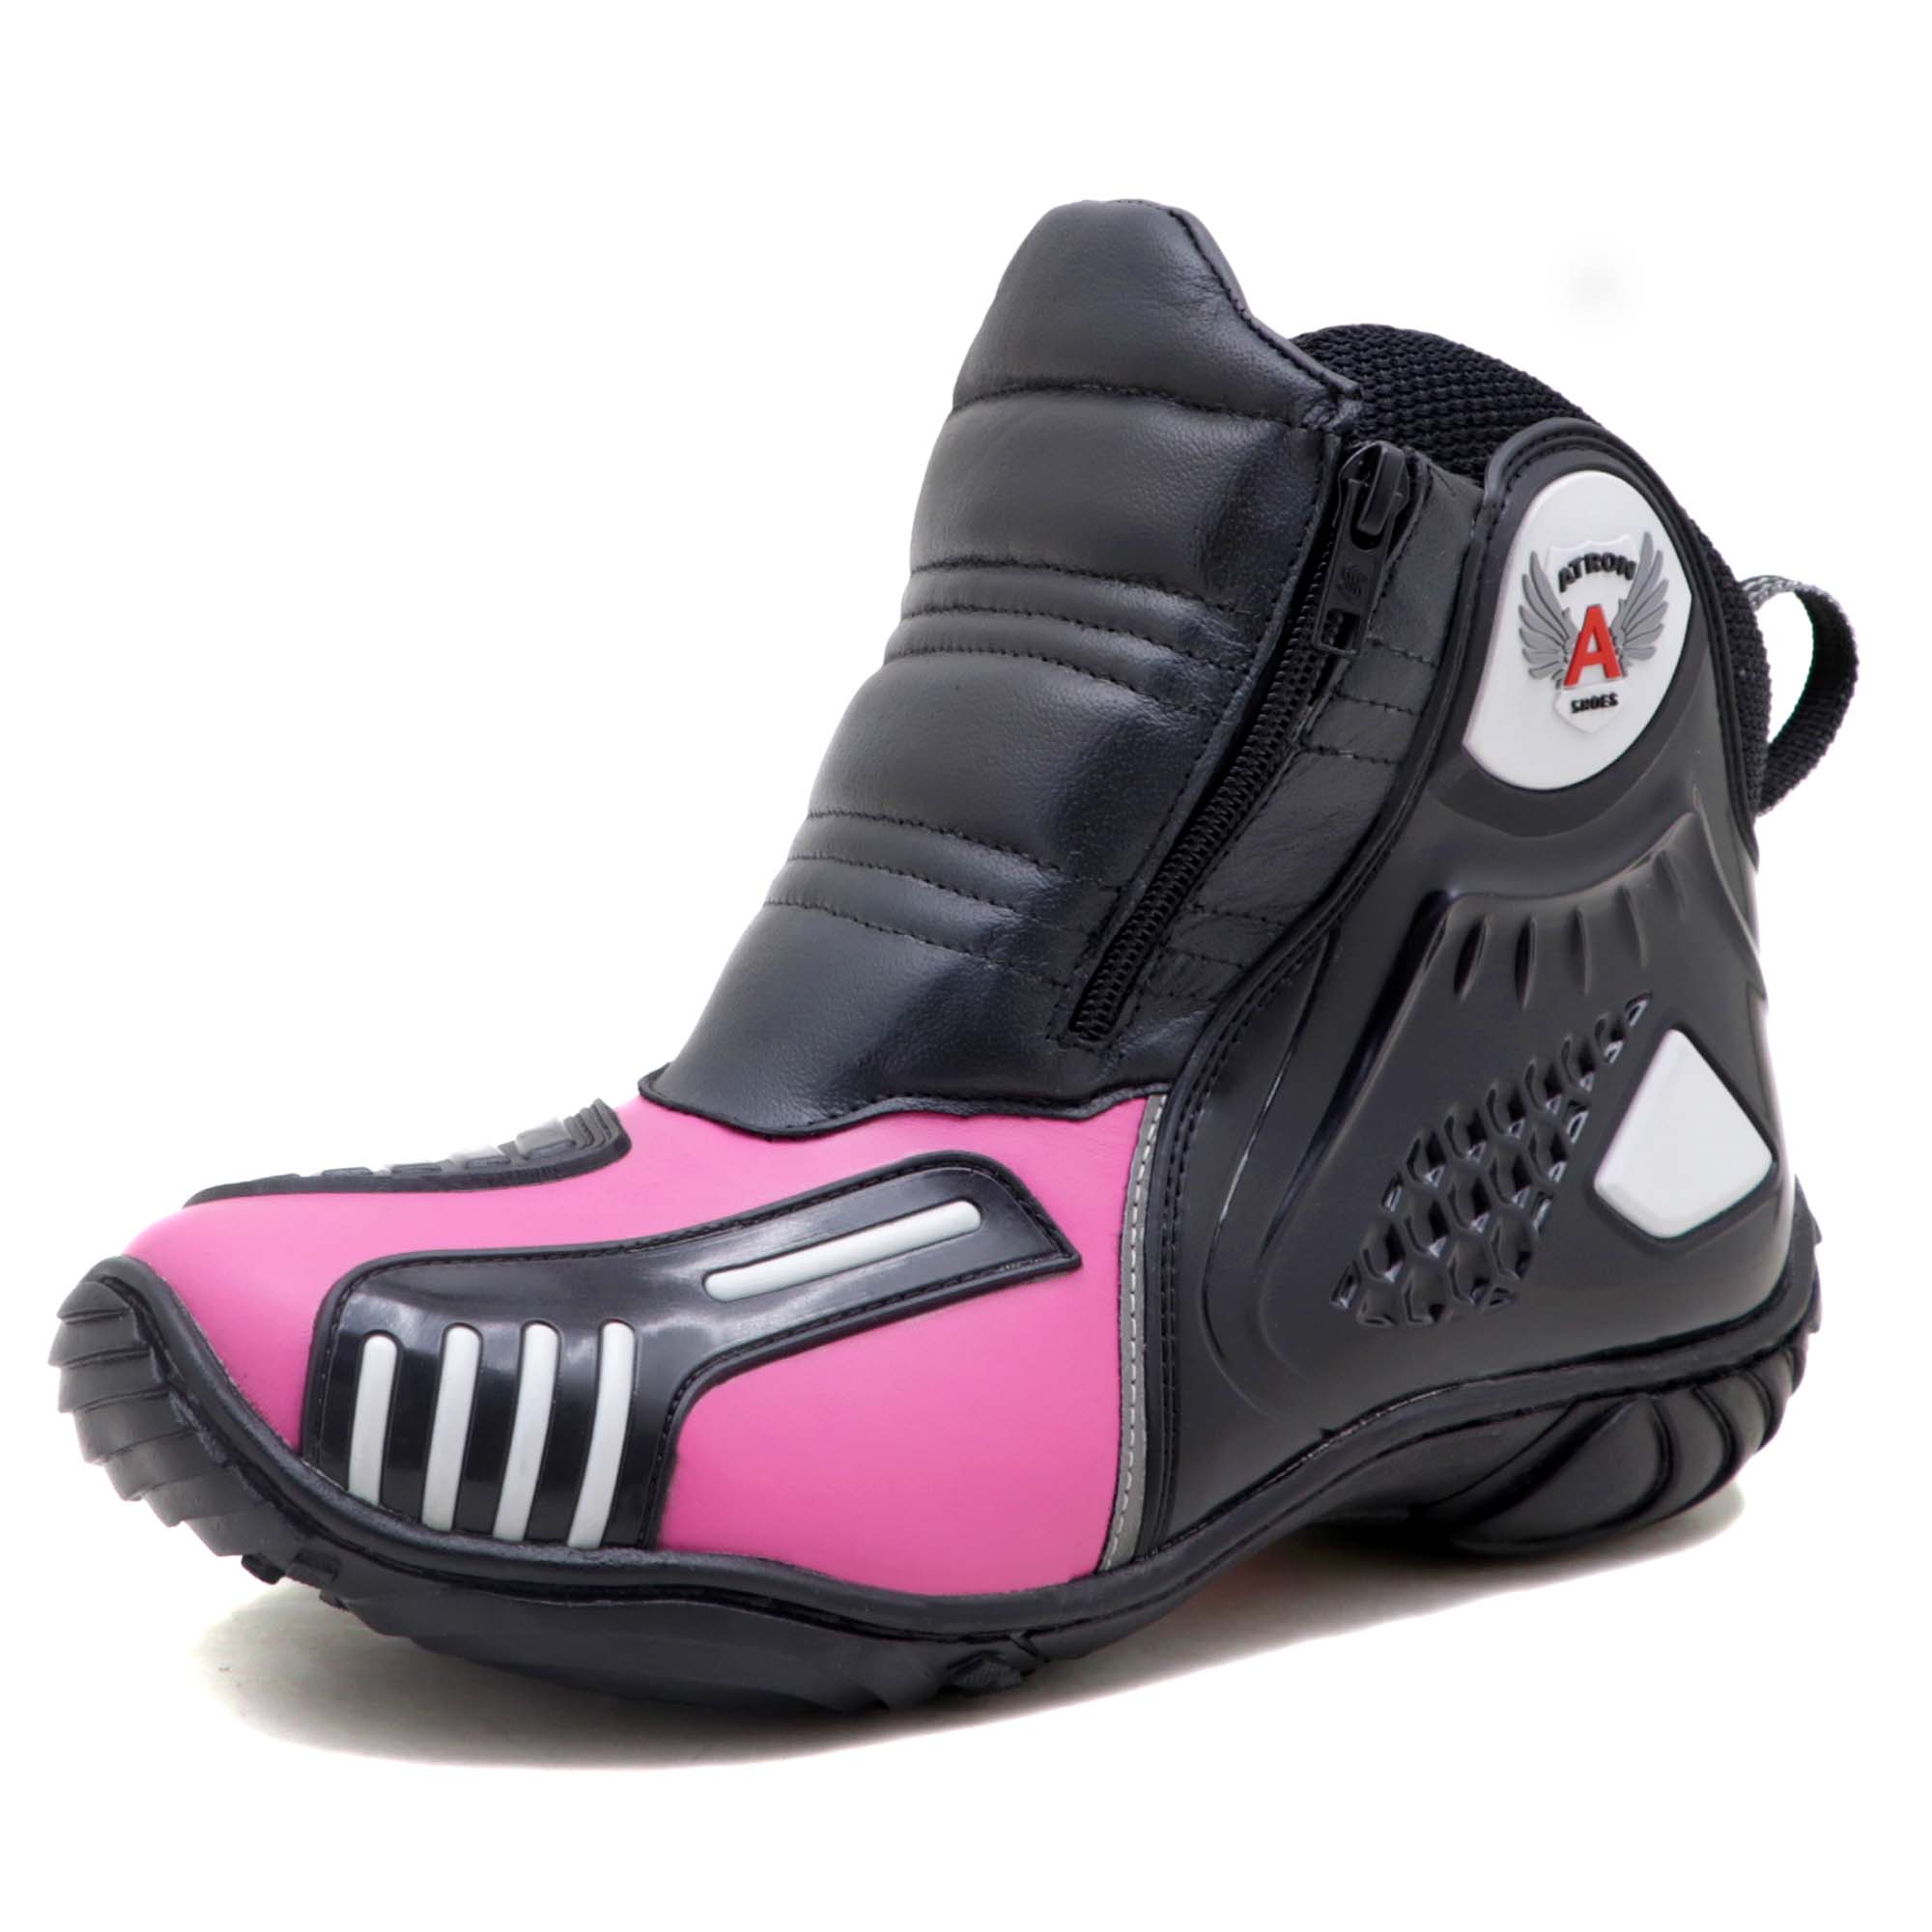 Bota motociclista Atron Shoes AS-HIGHWAY em couro legítimo semi-impermeável emborrachada na cor Pink 407